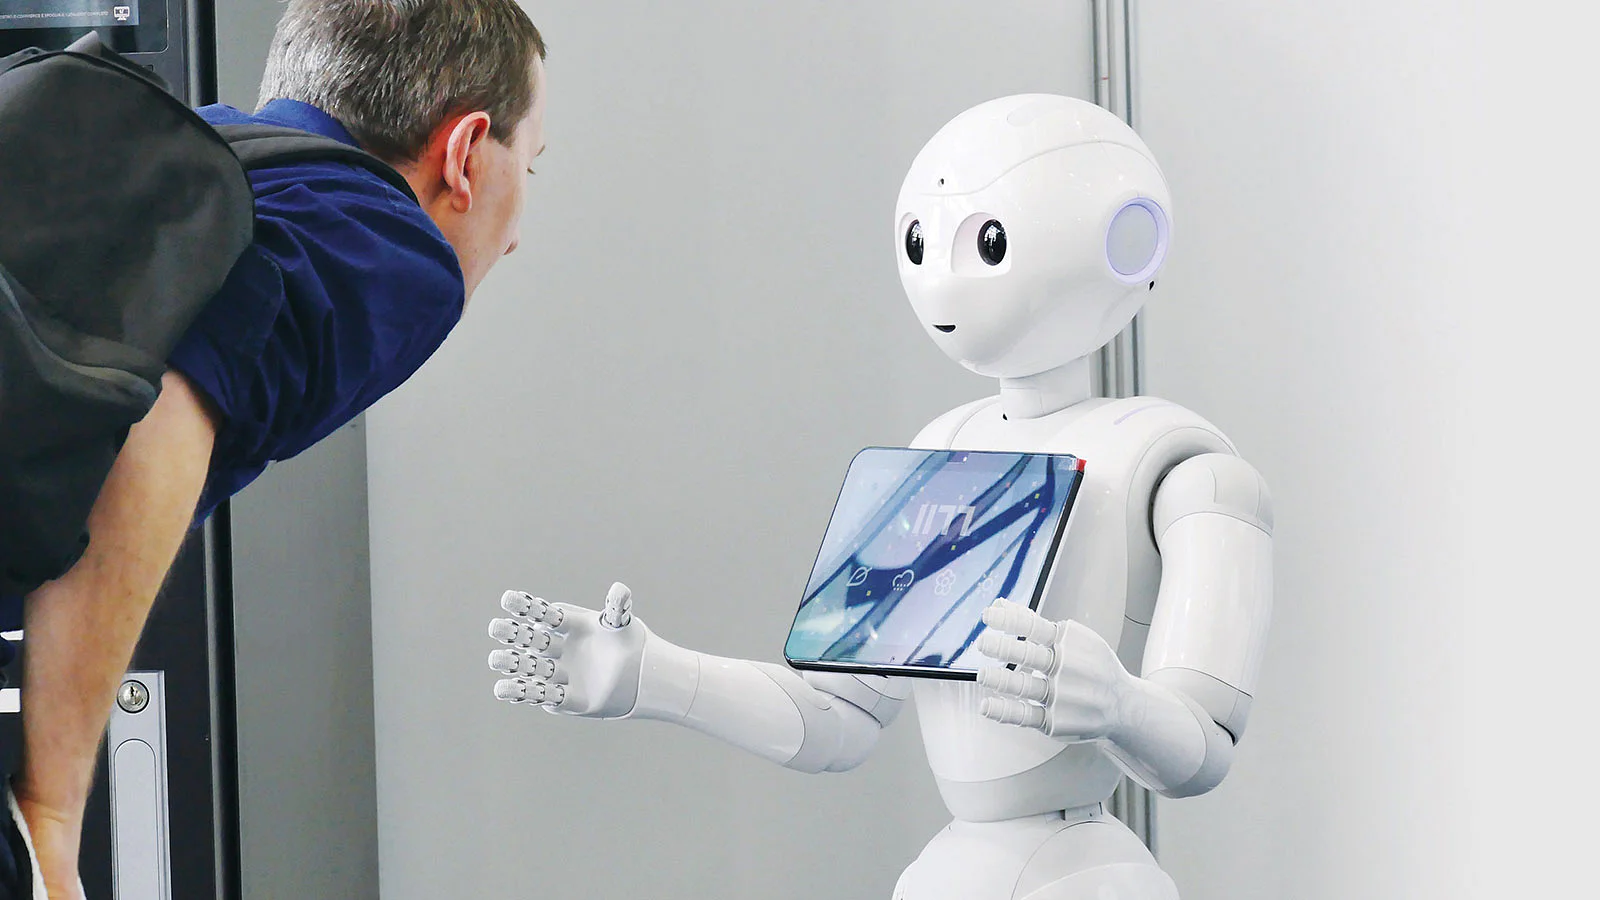 كيف تحصل روبوتات الذكاء الاصطناعي على معلوماتها؟ ومادور البشر في عملها؟